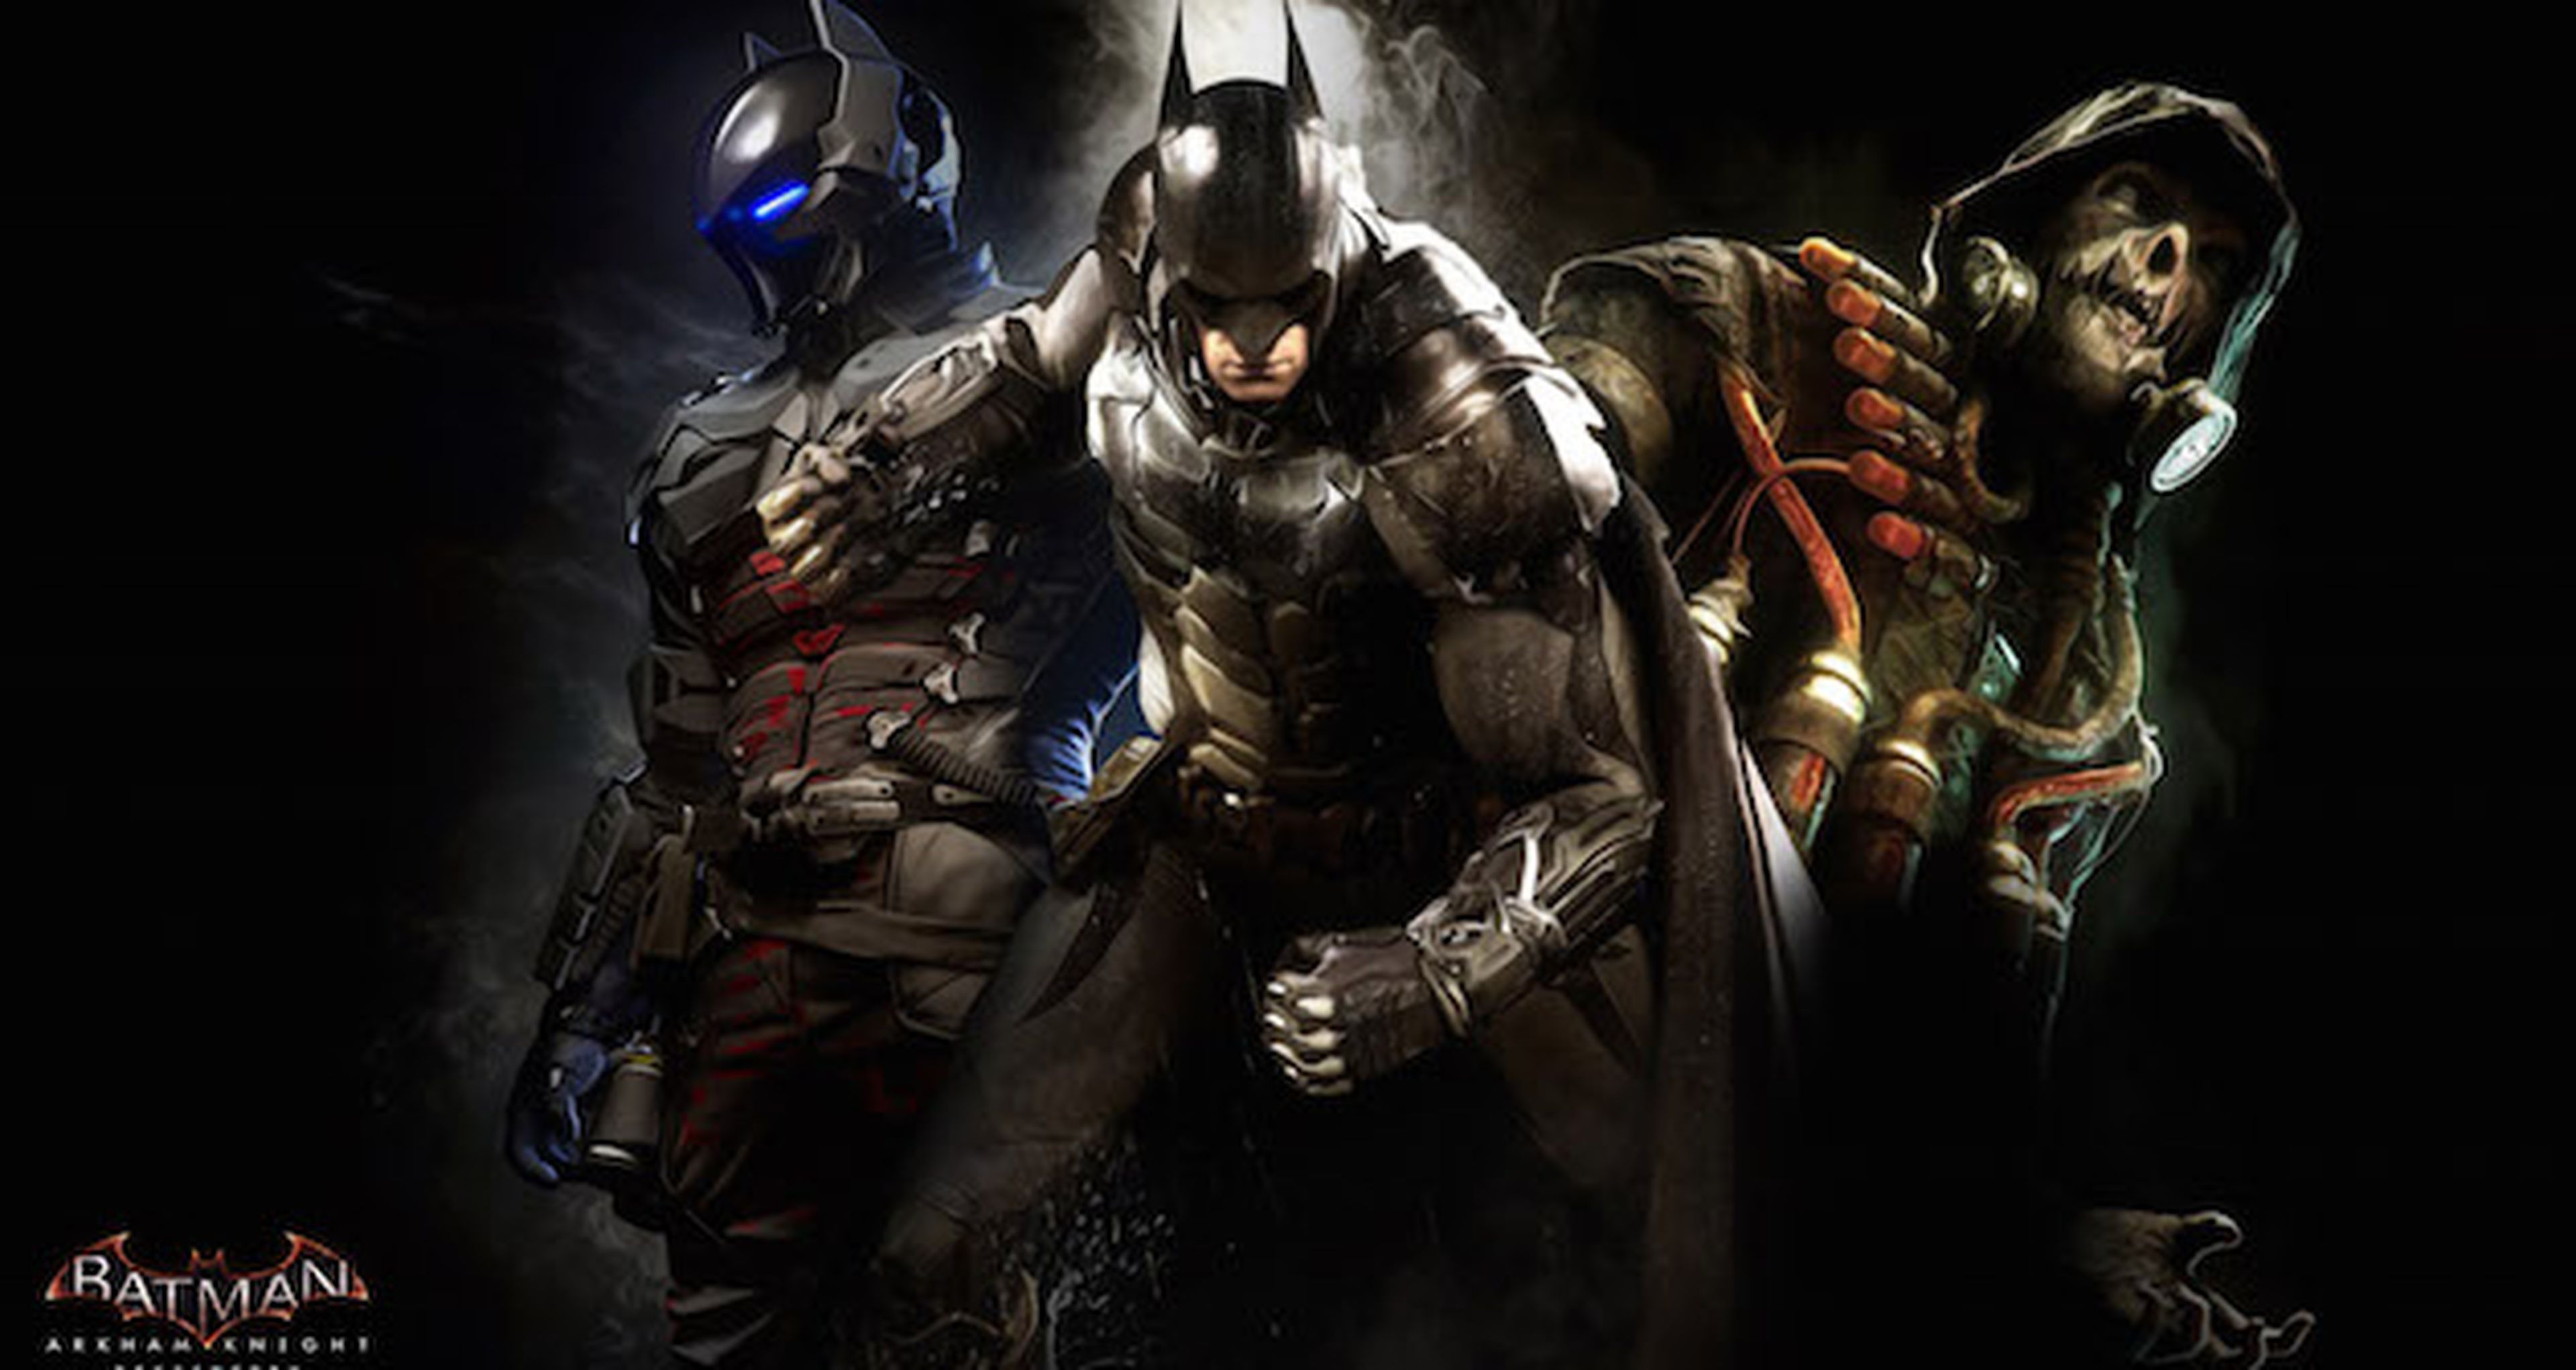 Batman Arkham Knight detalla sus contenidos exclusivos temporales en PS4